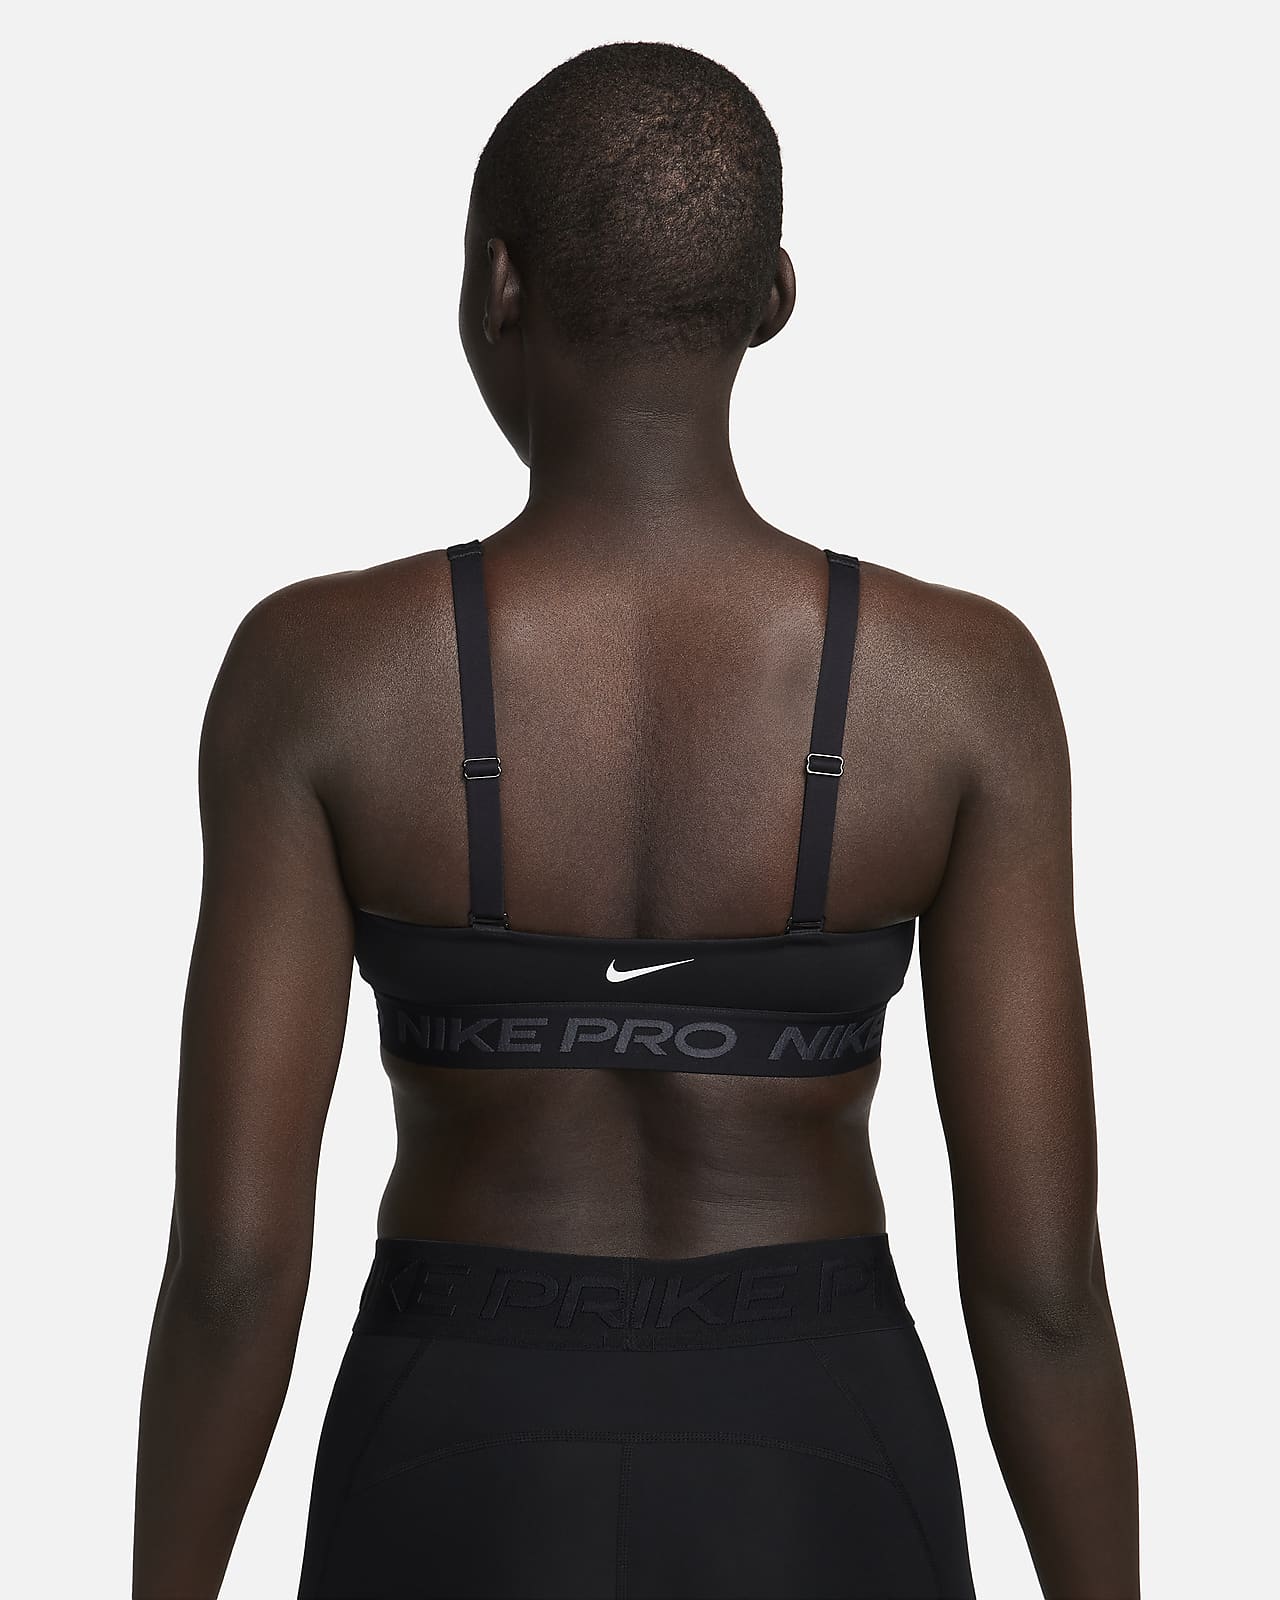 New Nike Leopard Black Training Sports Bra DD1117 073 Size Small 4-6 XS M L  